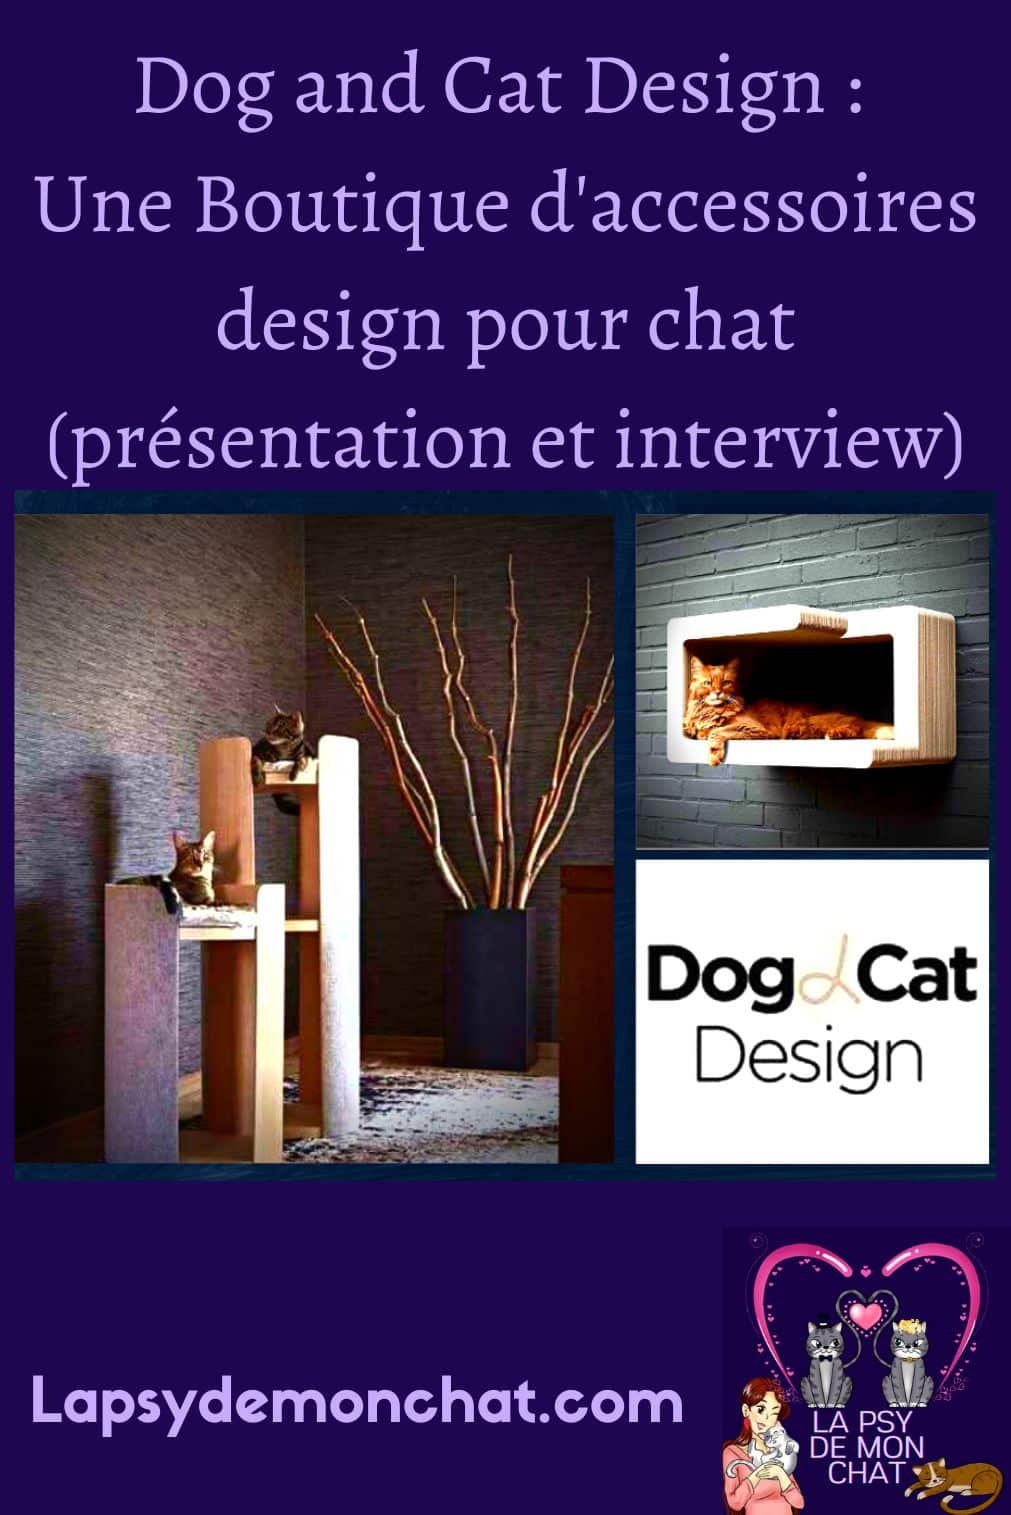 Dog and Cat Design  une boutique d’accessoires design pour chat (présentation et interview) - pinterest